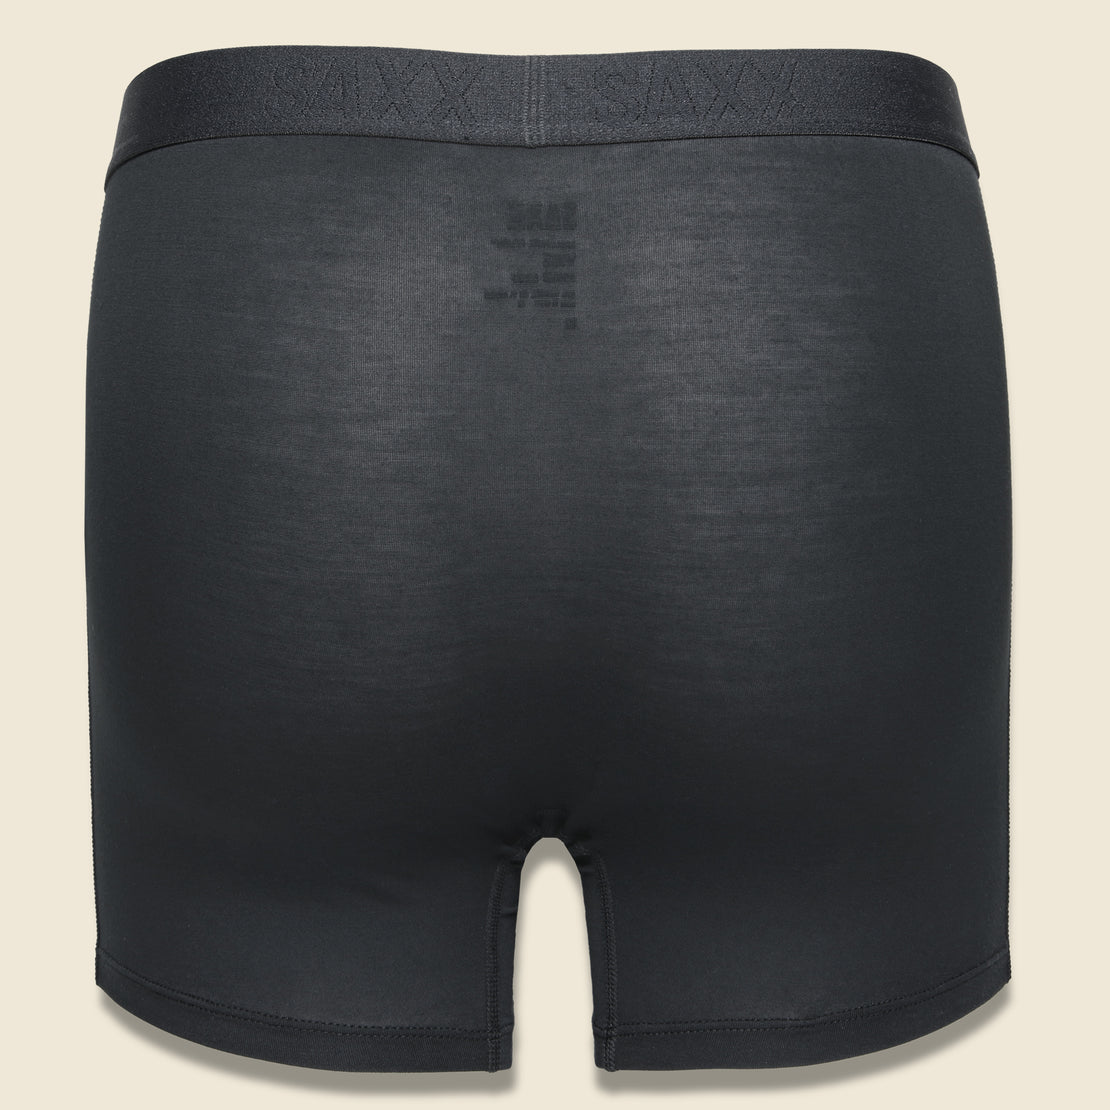 Vibe Boxer Brief - Black/Black - SAXX - STAG Provisions - Accessories - Underwear